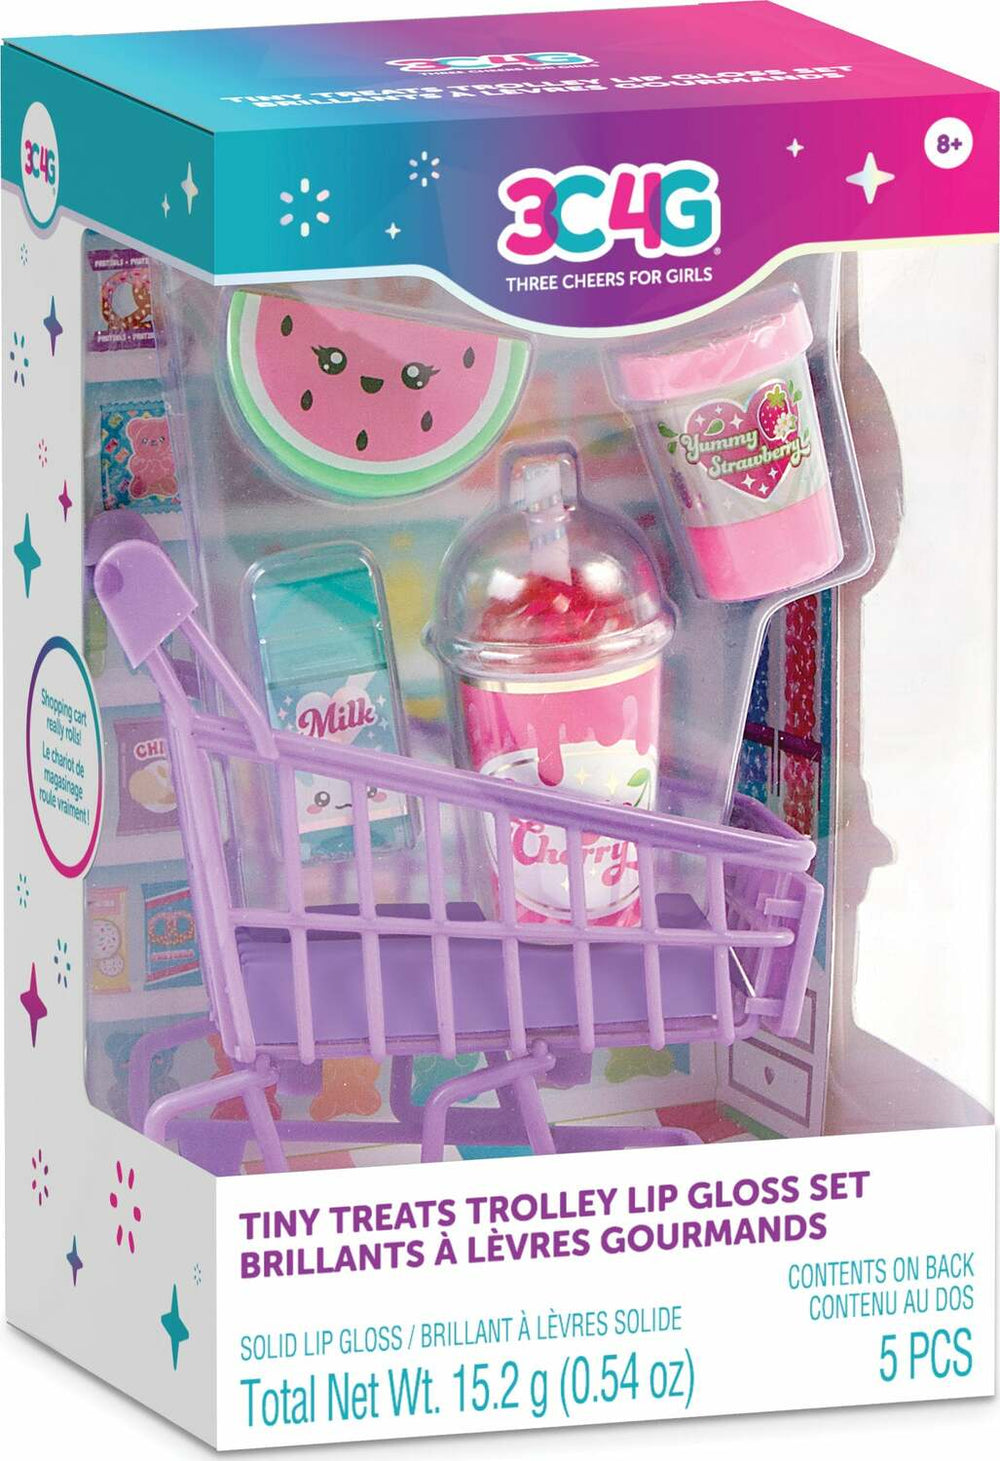 Tiny Treats Trolley Lip Gloss Set